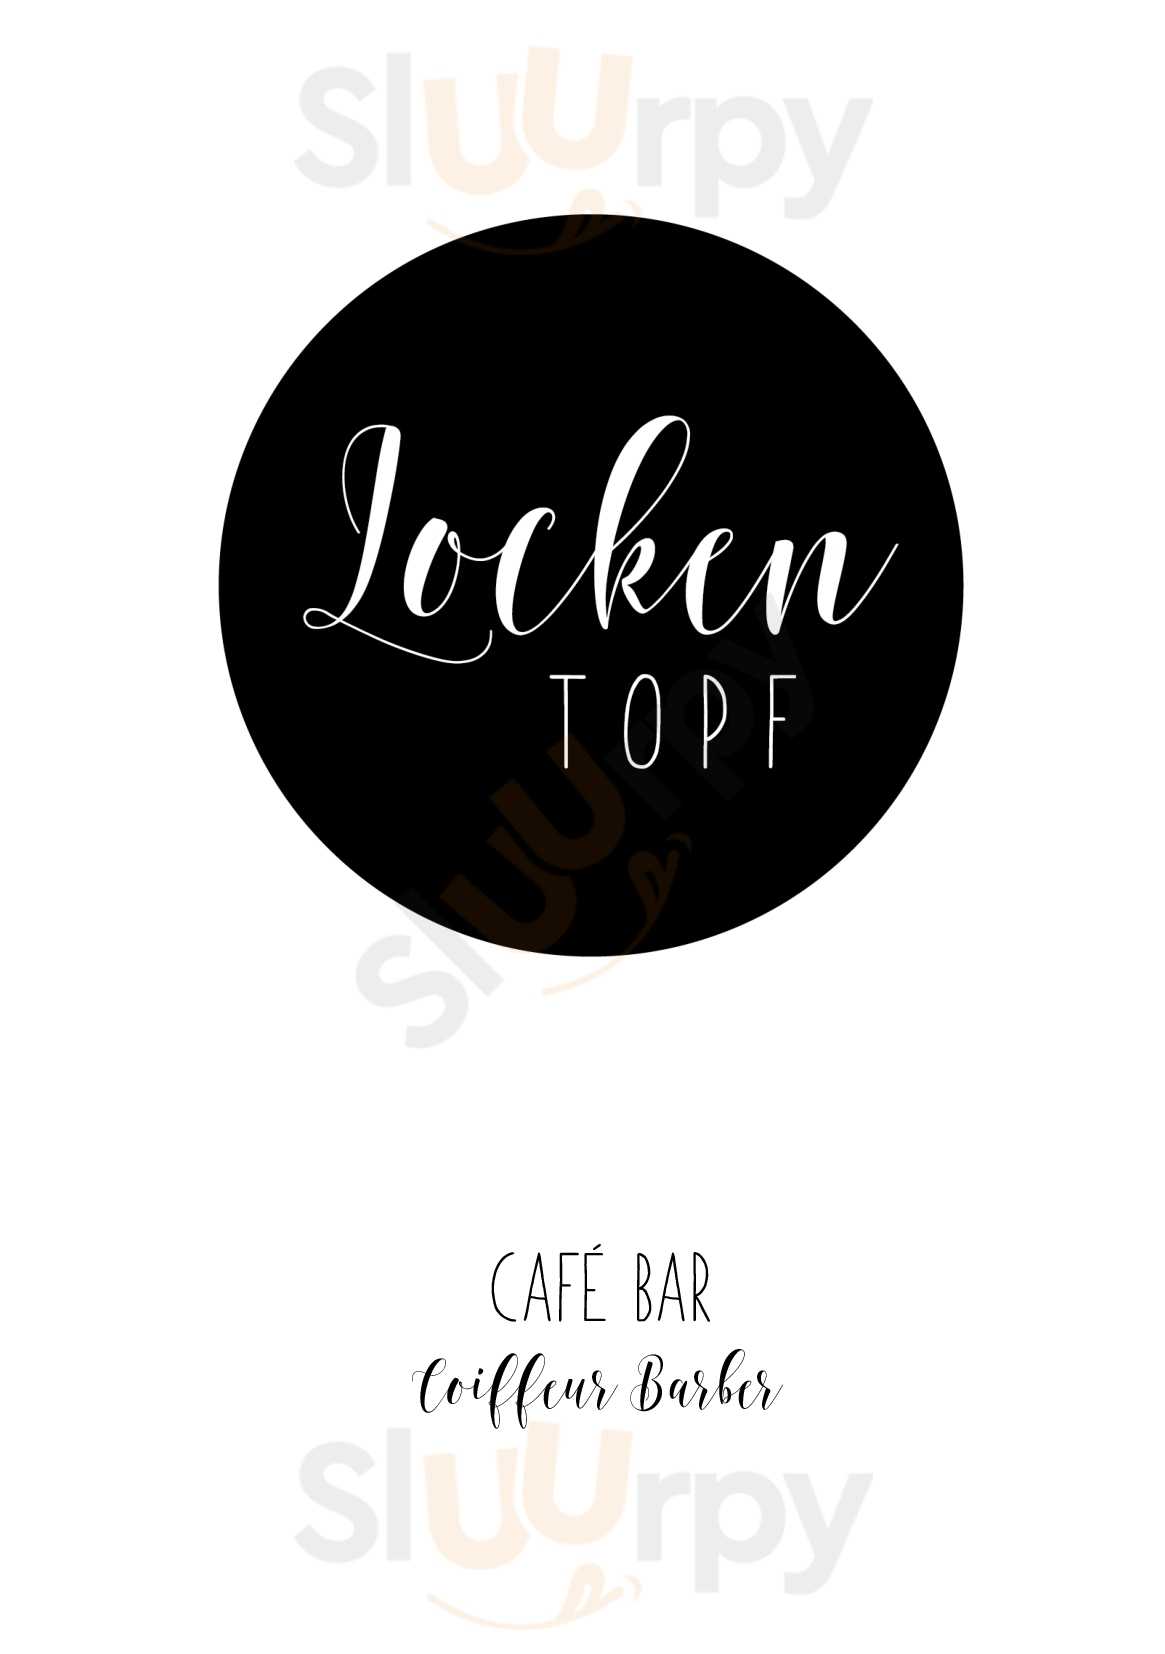 Café Bar Lockentopf Aarau Menu - 1